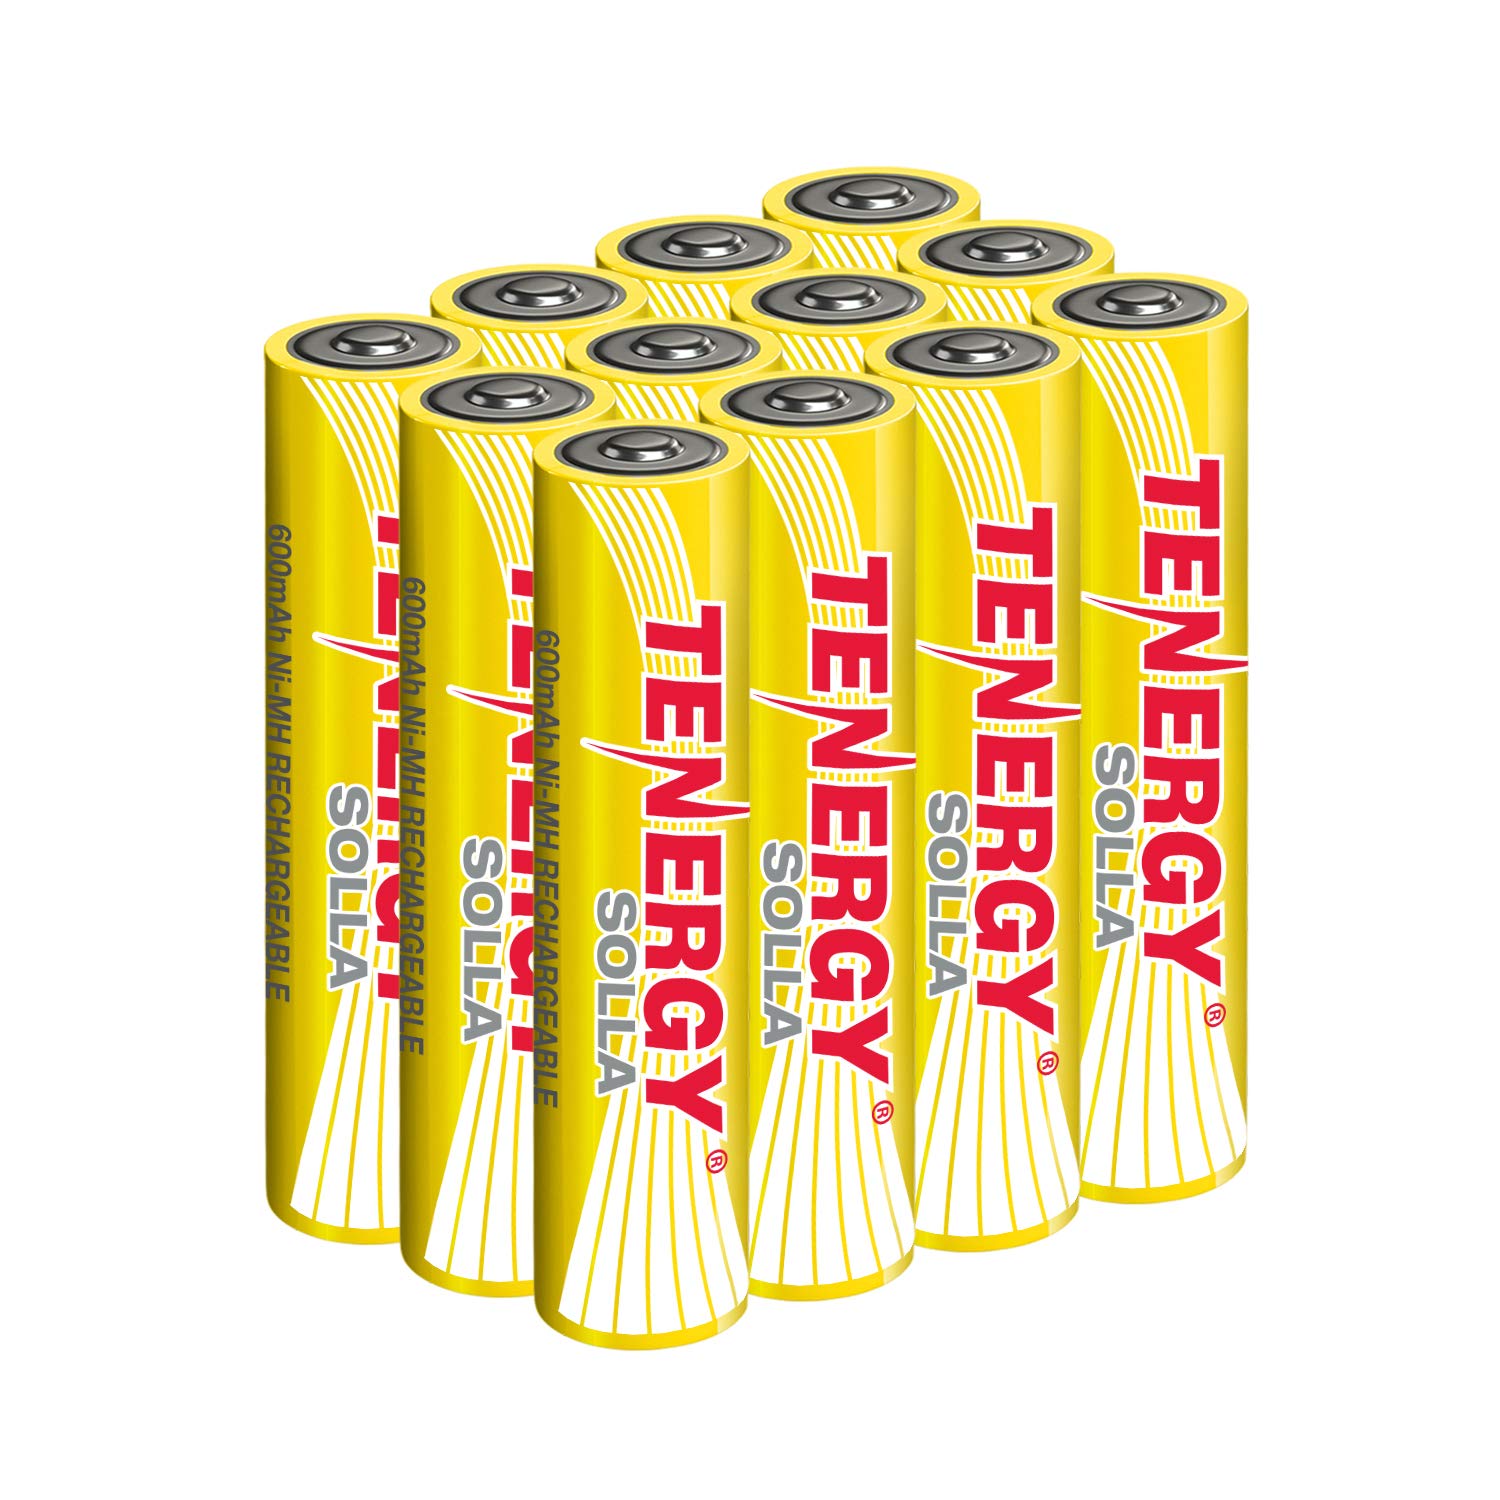 Tenergy Solla AAA Rechargeable NiMH Battery